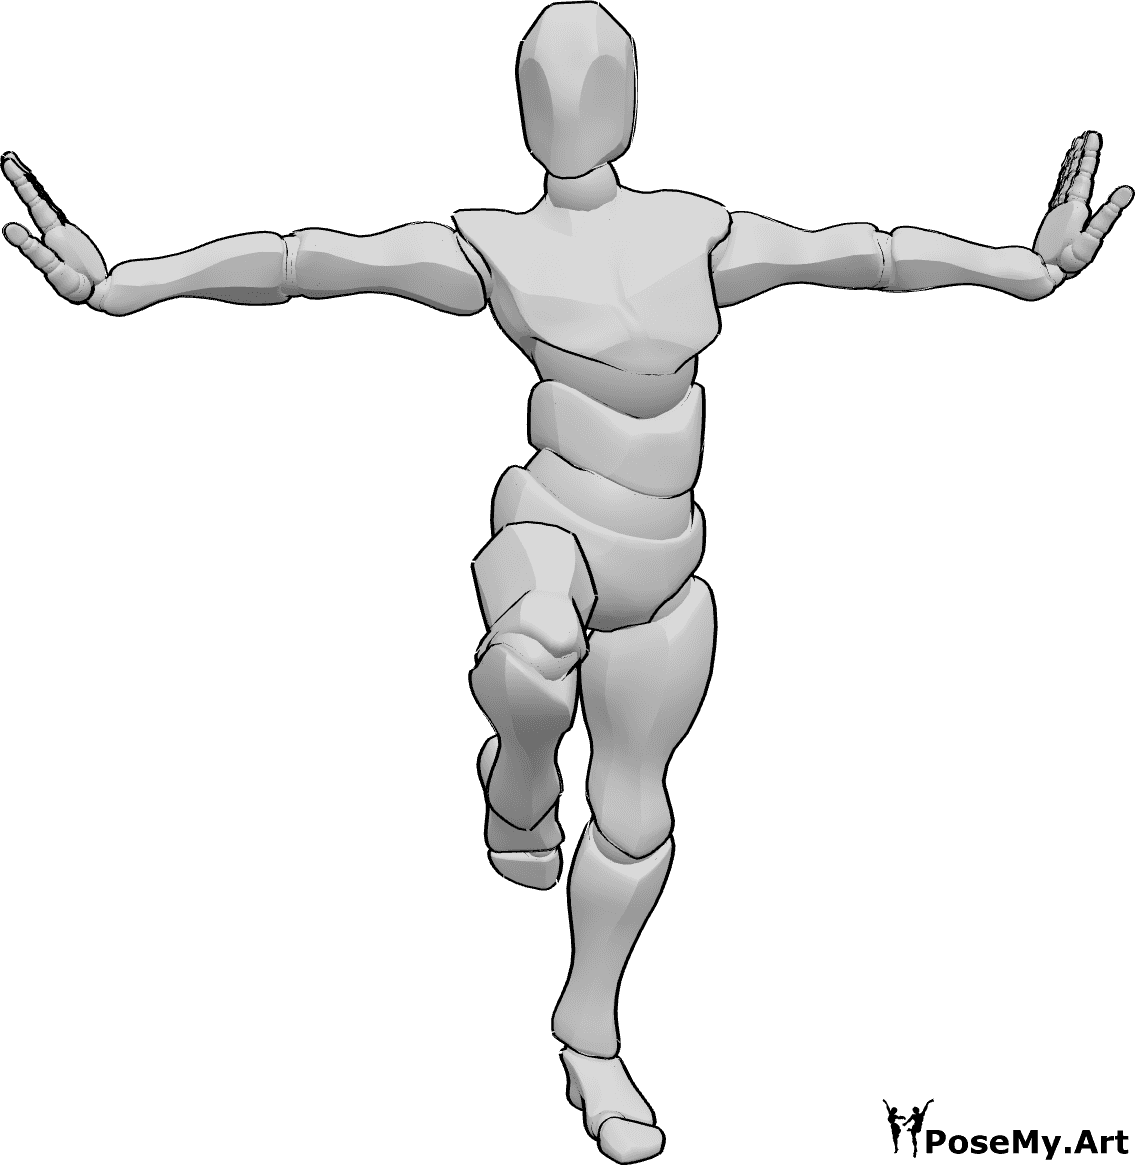 Referencia de poses- Postura de pie con la pierna izquierda - Hombre de pie sobre una pierna pose de kung fu